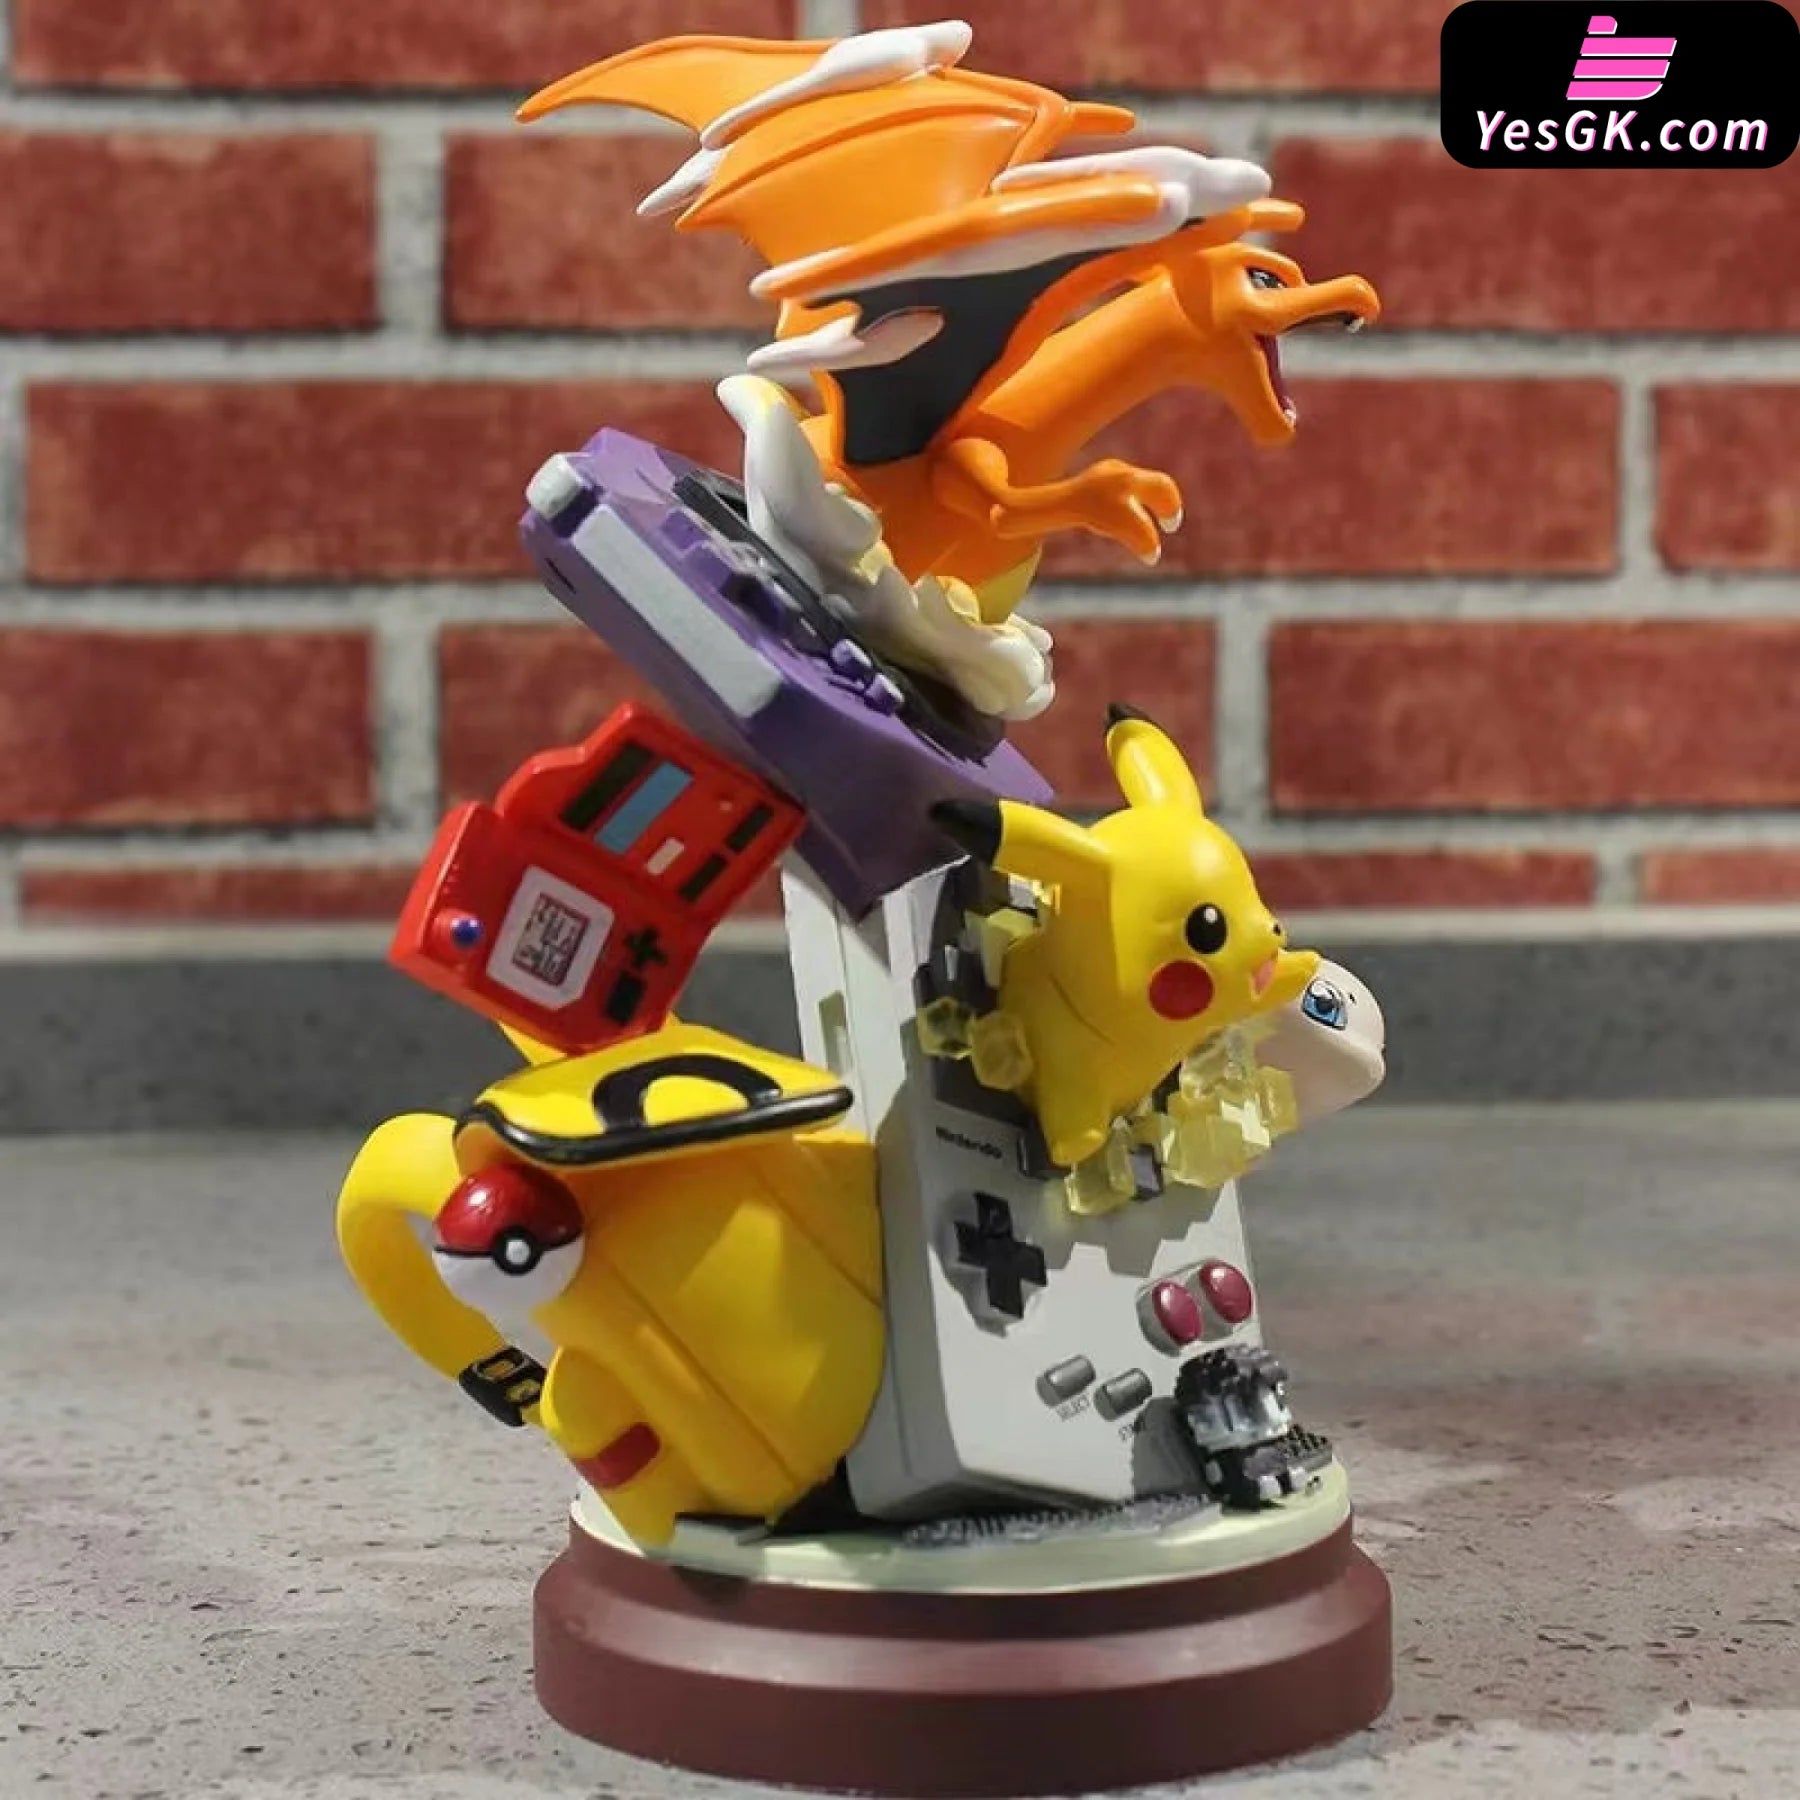 Figurine Pokémon, Pikachu Dracaufeu Mew Game Boy